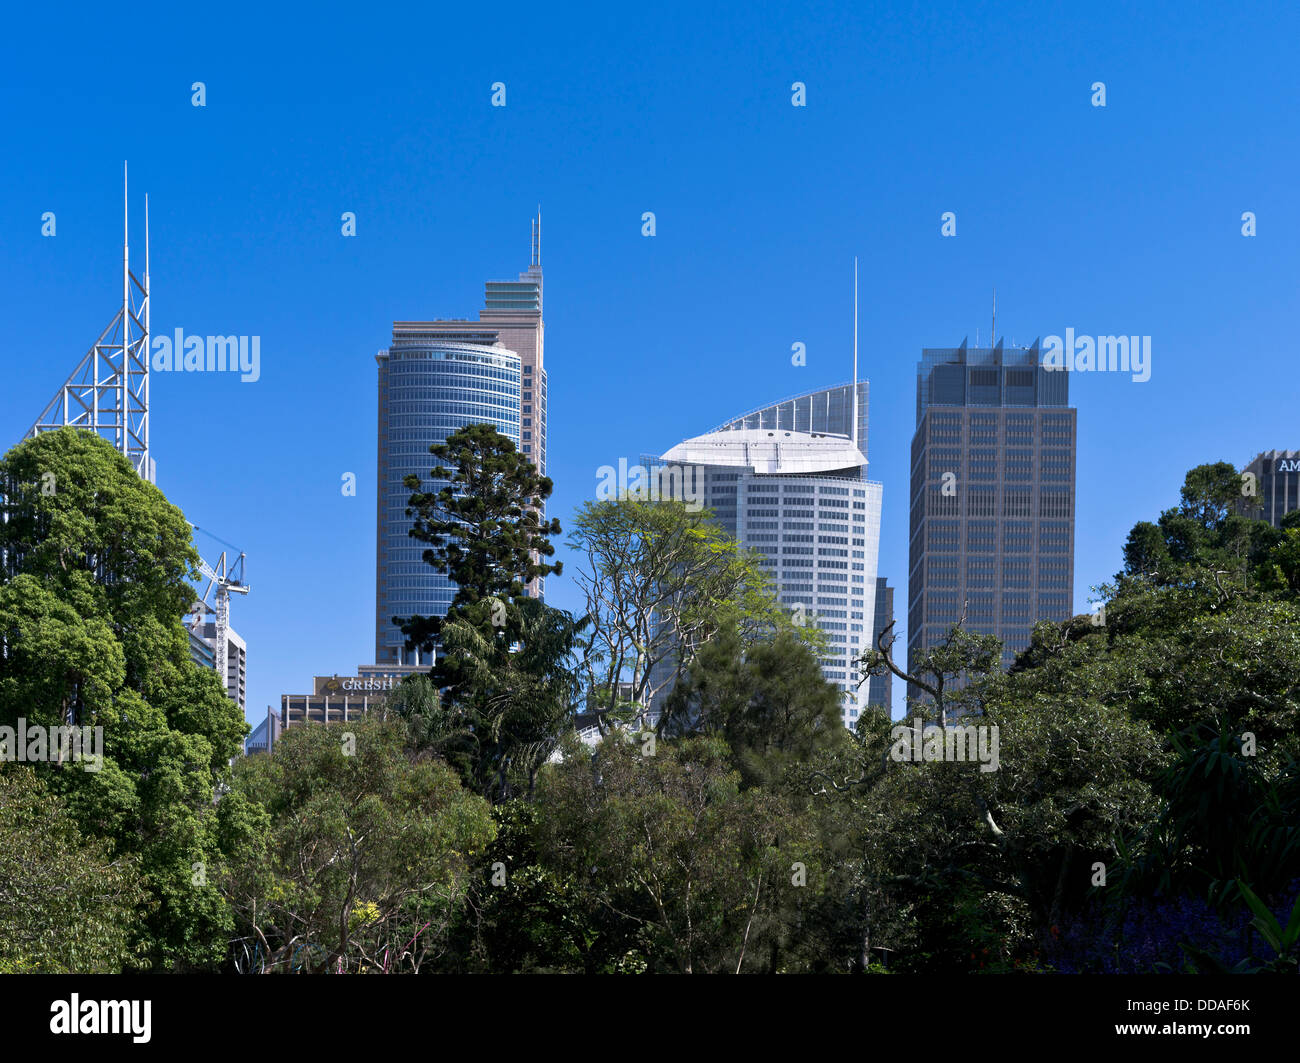 Dh Royal Botanic Gardens Sydney Australia alberi Park Central Business District skyline della città di edifici Foto Stock